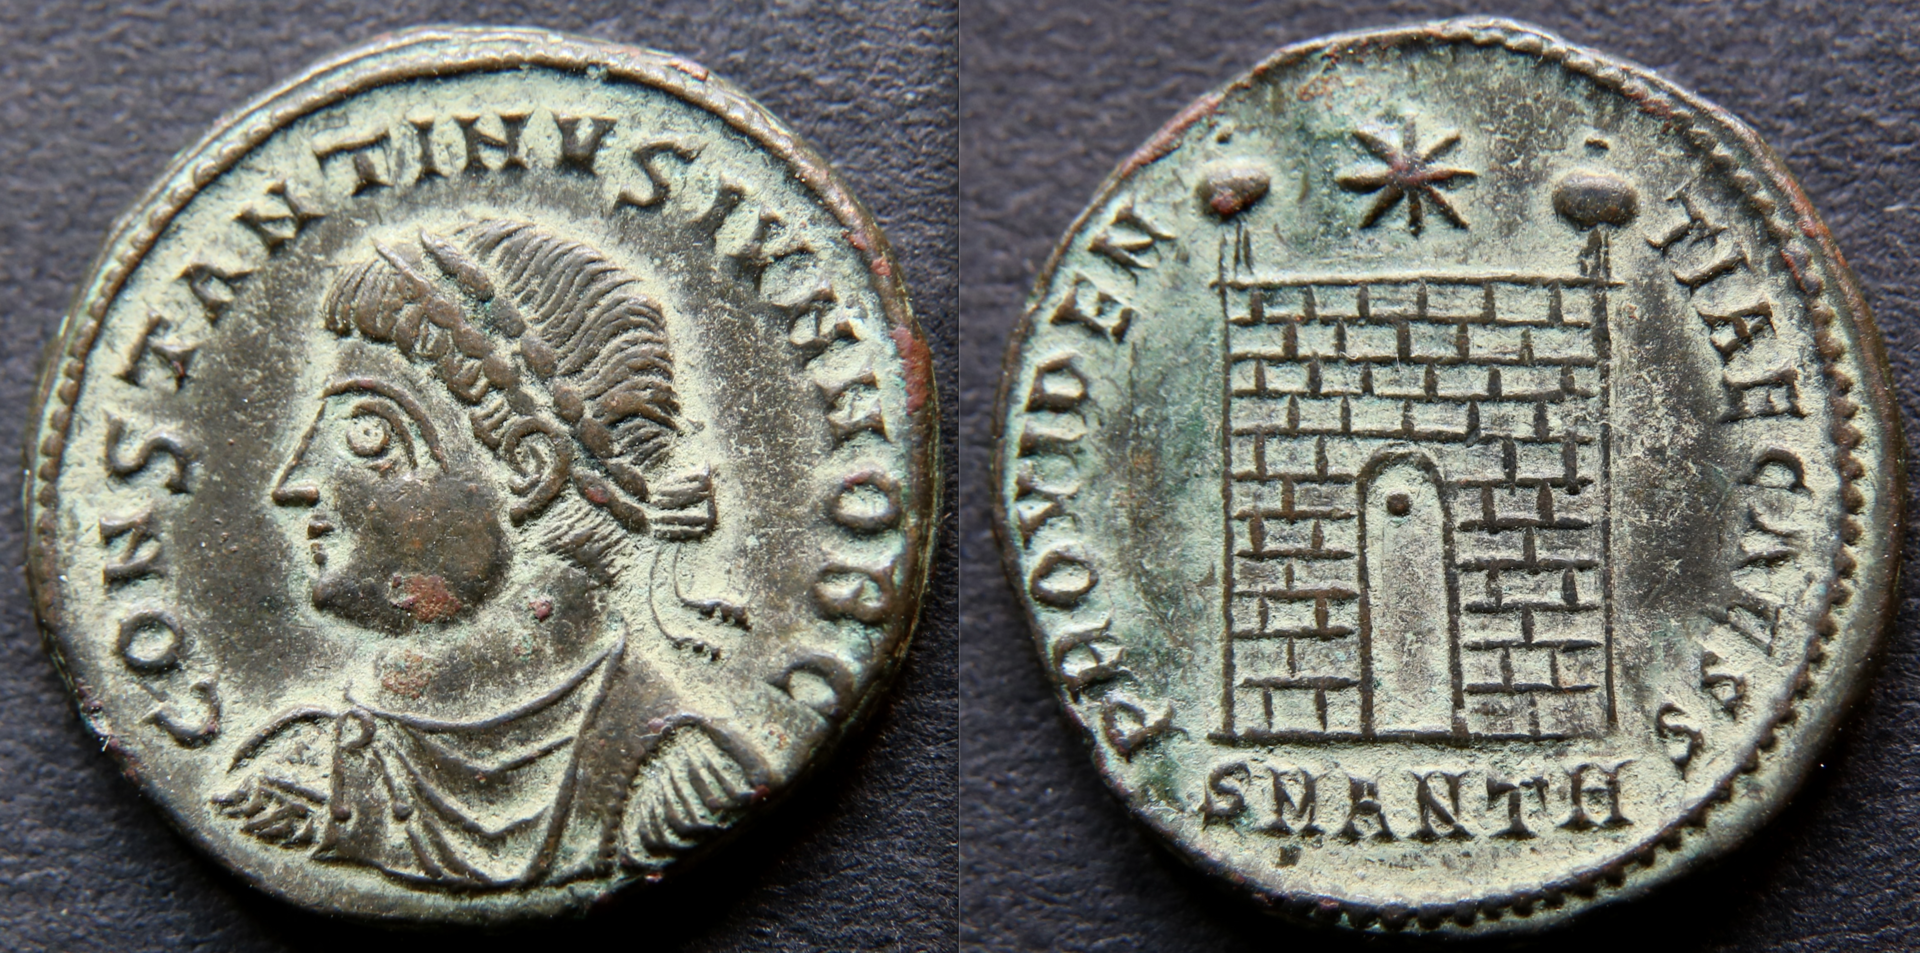 Rom – Constantinus II, Providentiae Caess, Lagertor, Antiochia.png